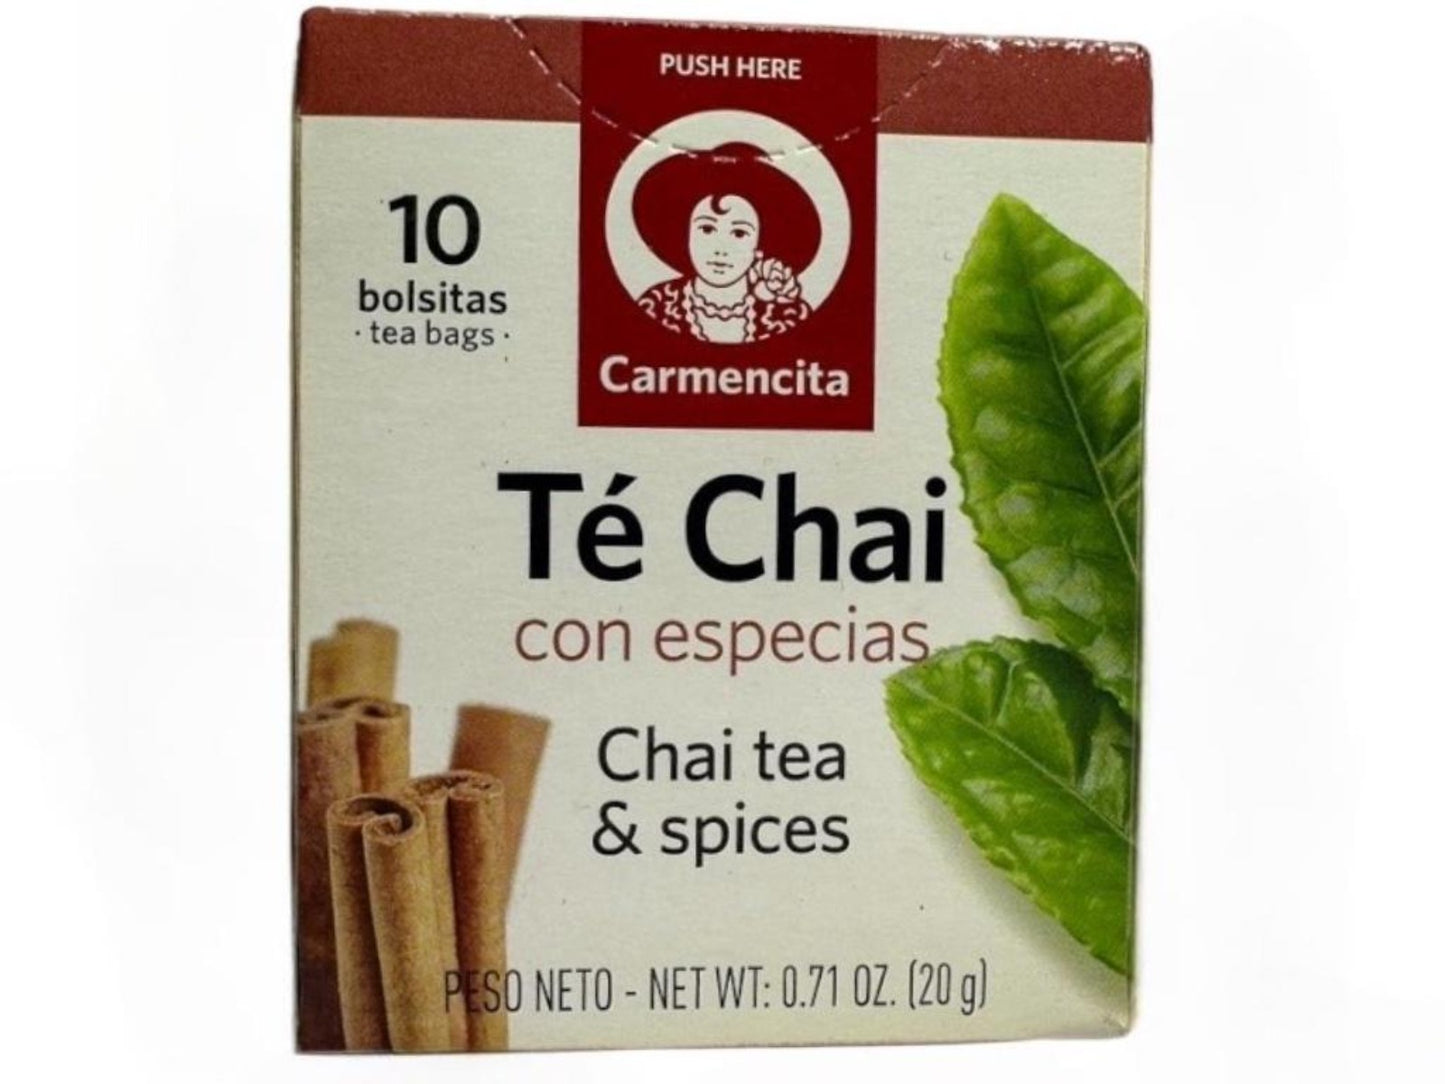 Carmencita Chai Tea And Spices 10x bags 20g